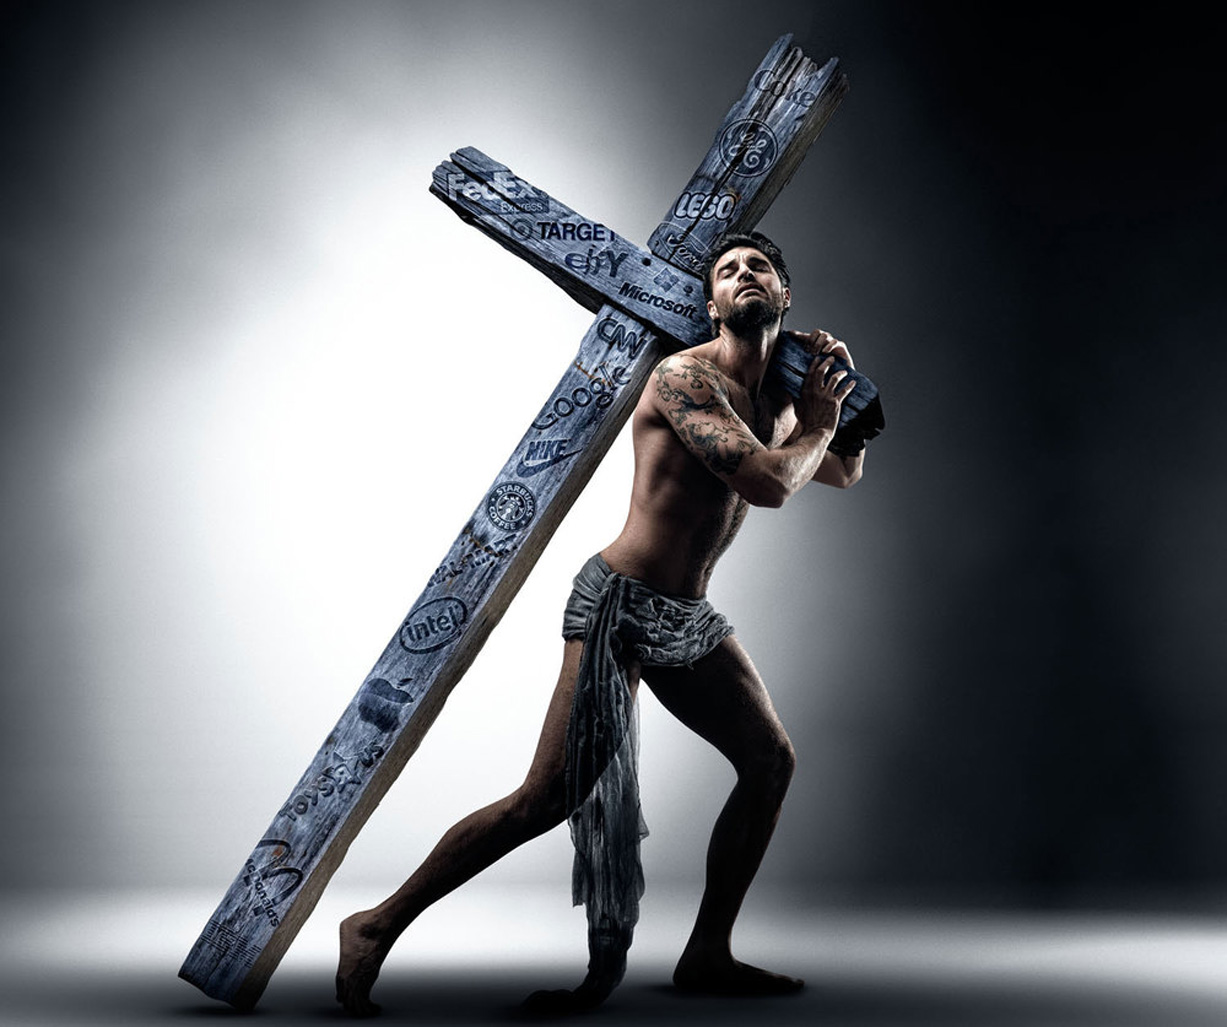 Ð Ð°ÑÐ¿ÑÑÑÐµ / Crucified by Colin Anderson - Idoll Magazine 2015 Sizzle Reel